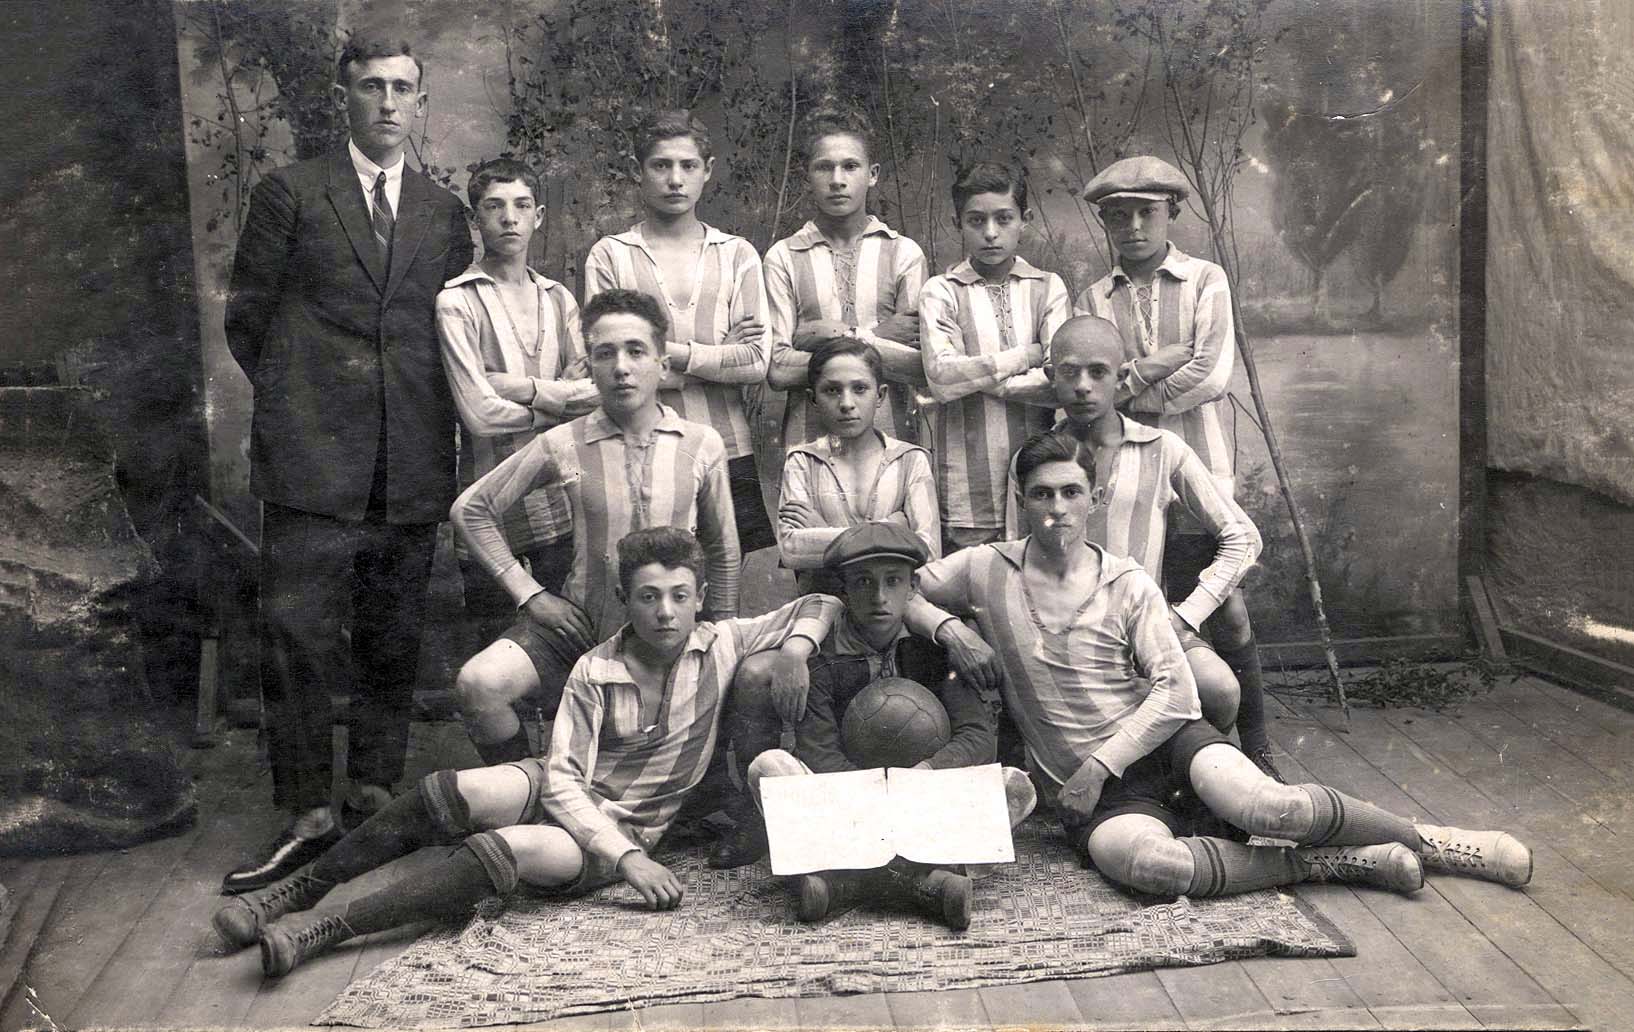 Пинск, Польша, 2/10/1929. Еврейская футбольная команда